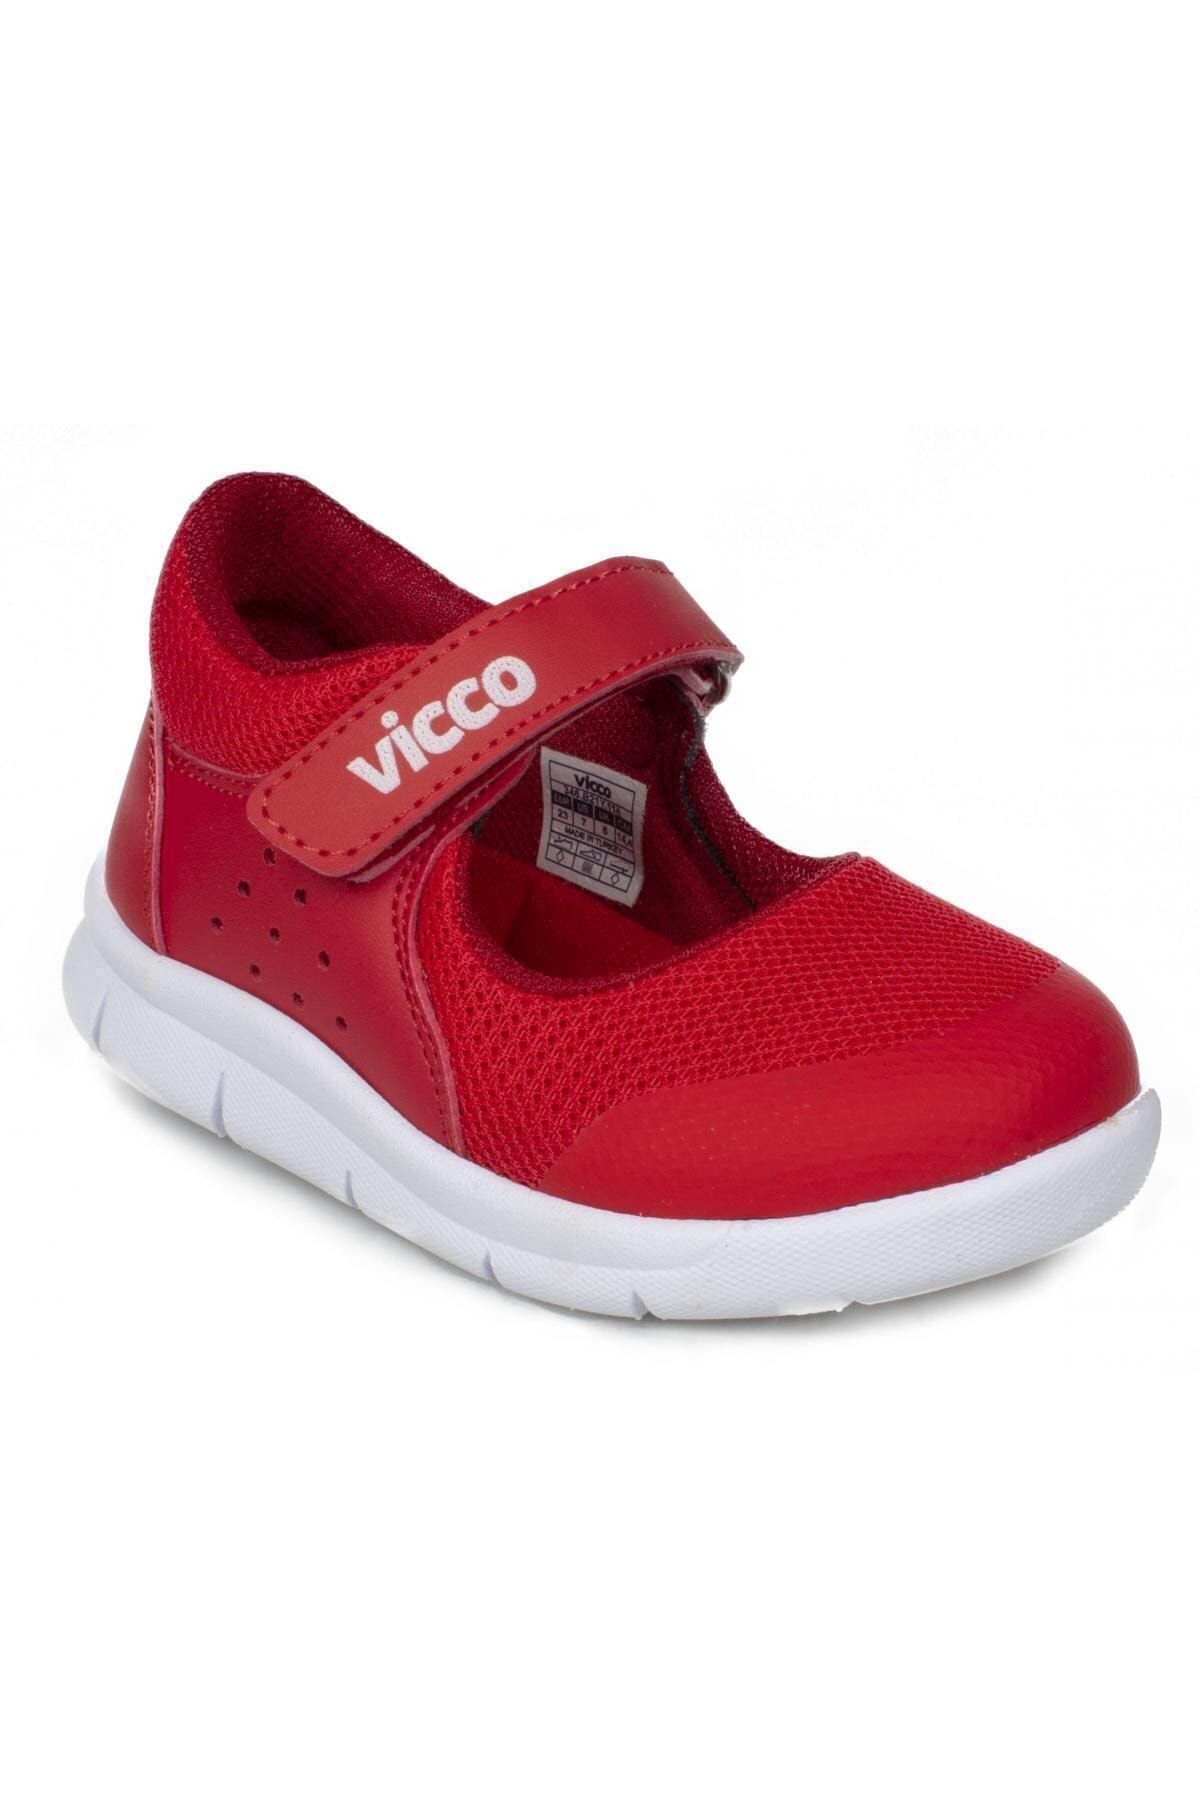 Vicco Çocuk  Kırmızı Ayakkabı 346.b21y.114